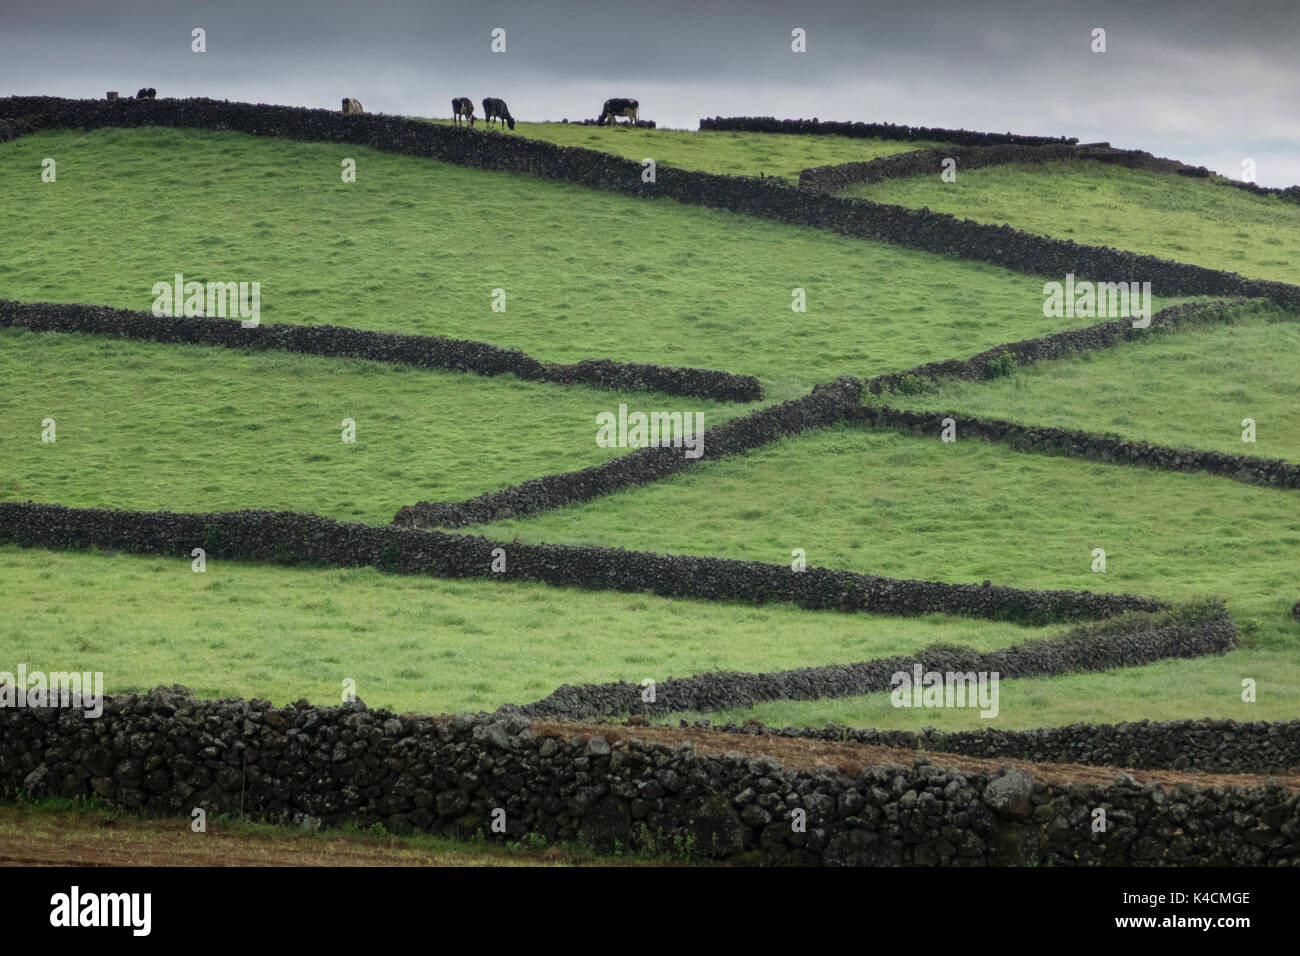 Les verts pâturages et champs bordée par d'innombrables murets de pierres sèches de roche volcanique, Terceira, Açores Banque D'Images